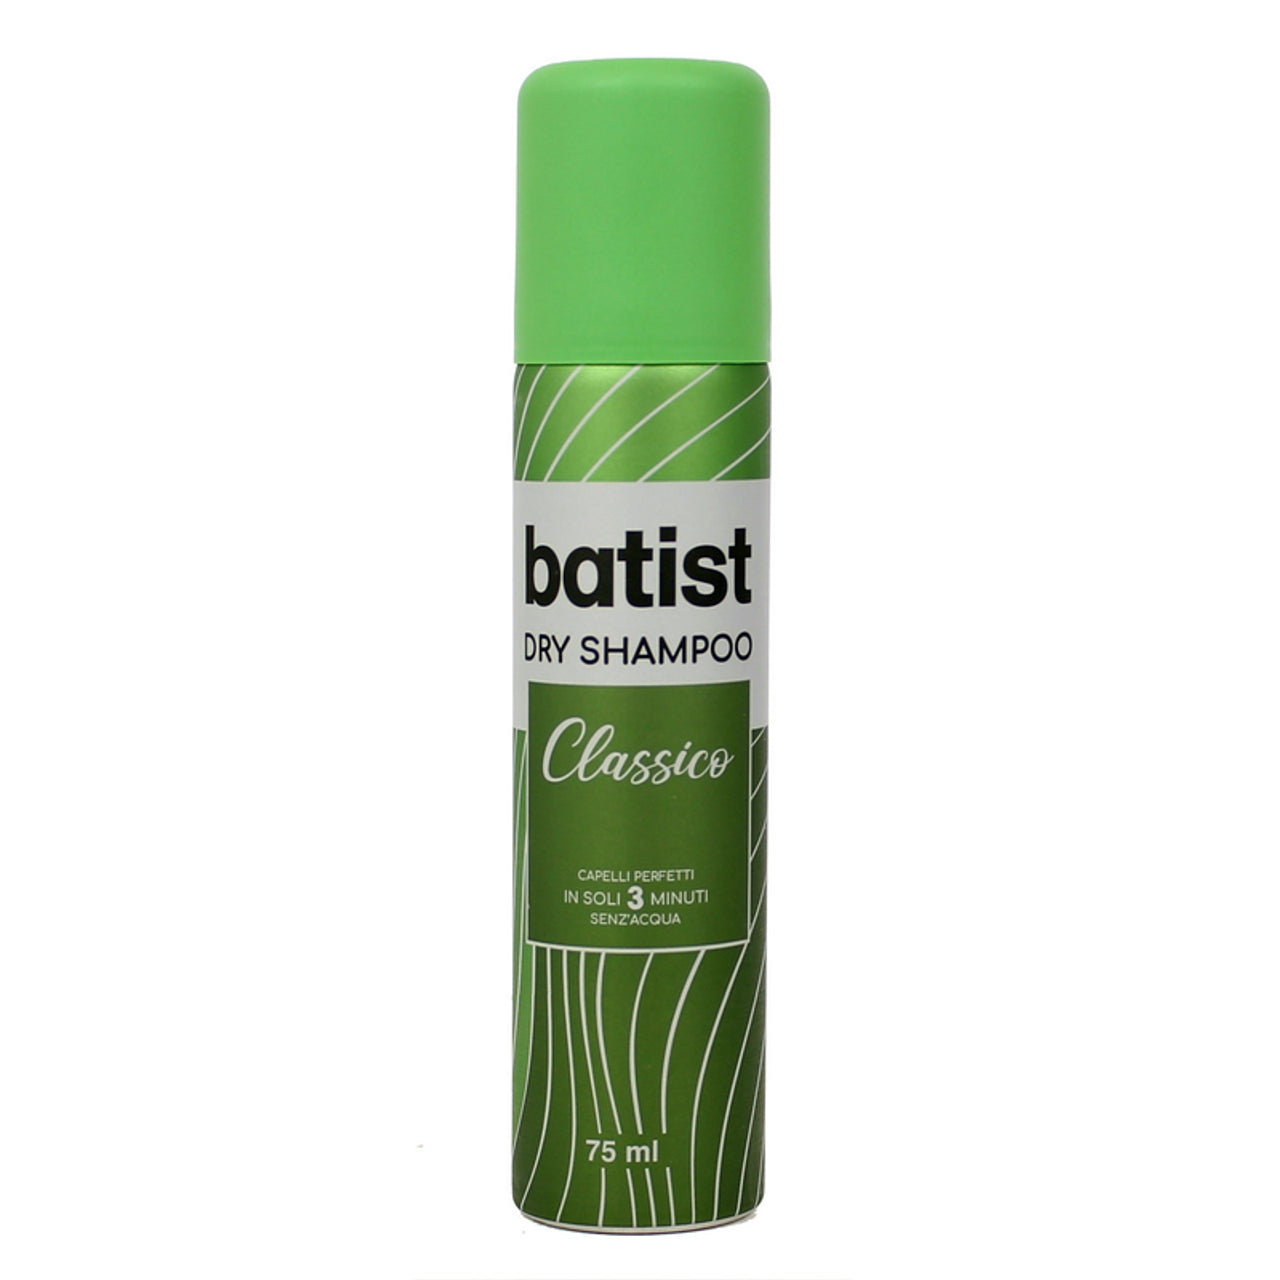 Batistický klasický suchý šampon 75 ml